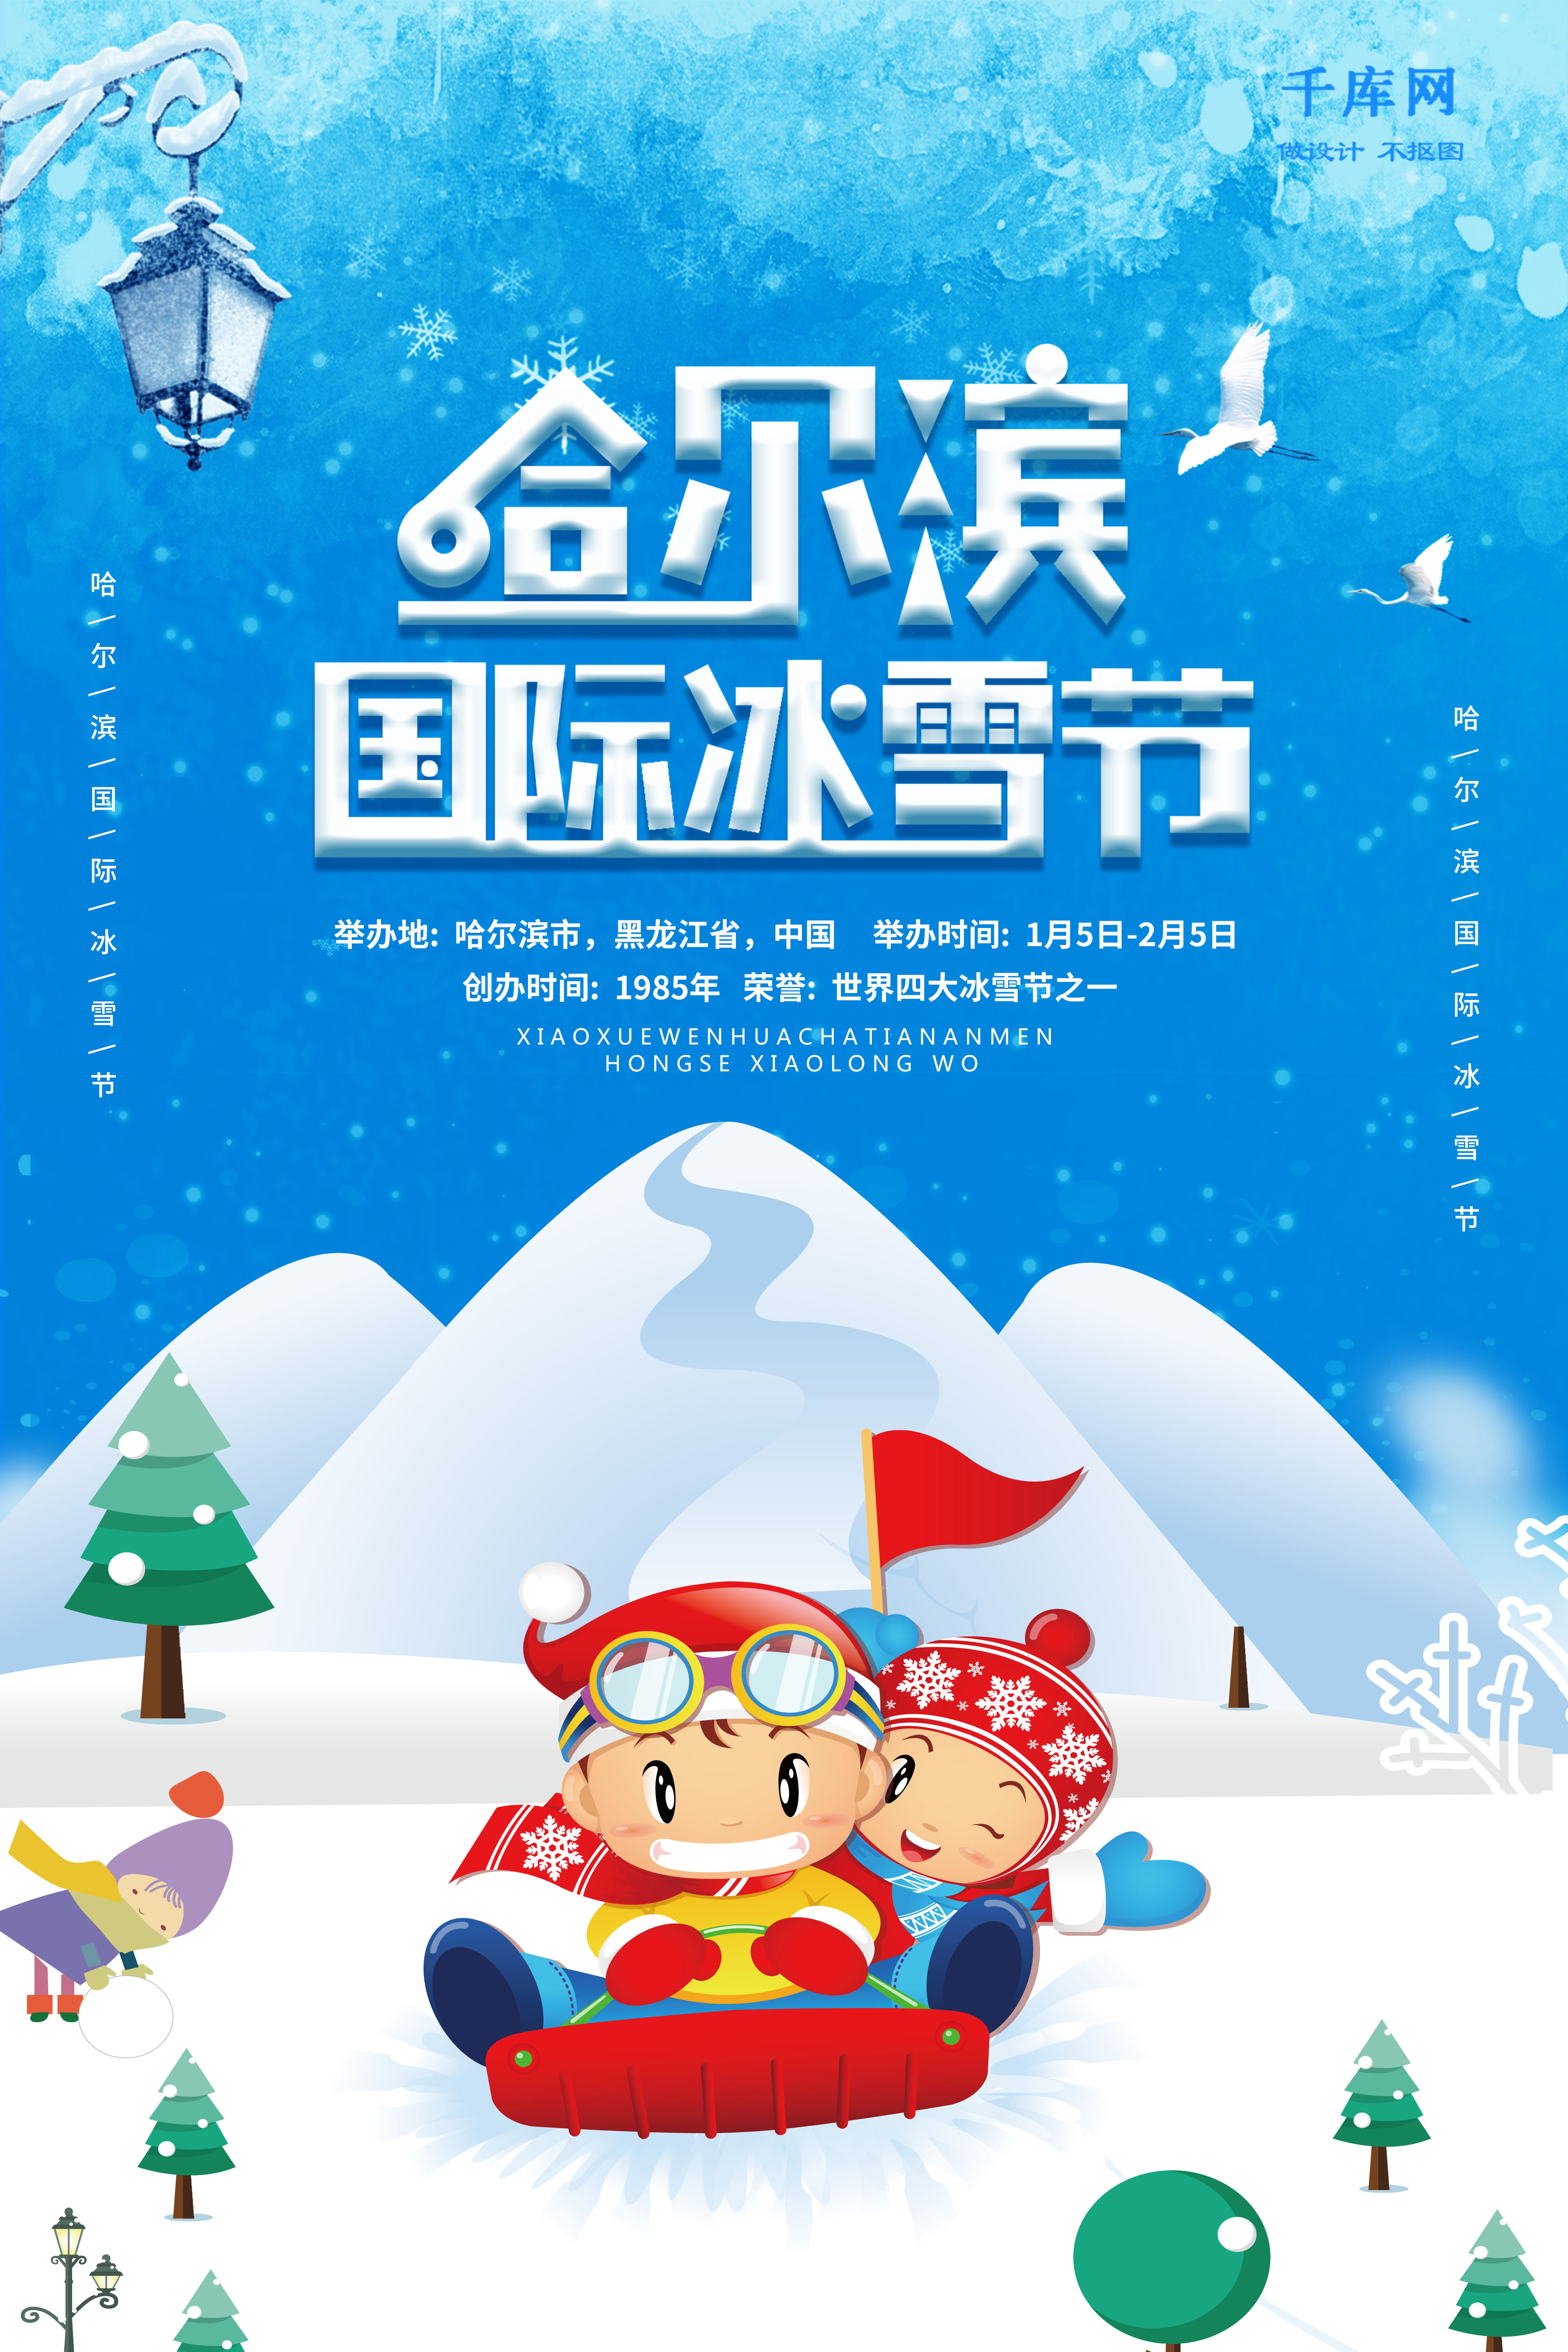 简洁大气哈尔滨国际冰雪节海报图片